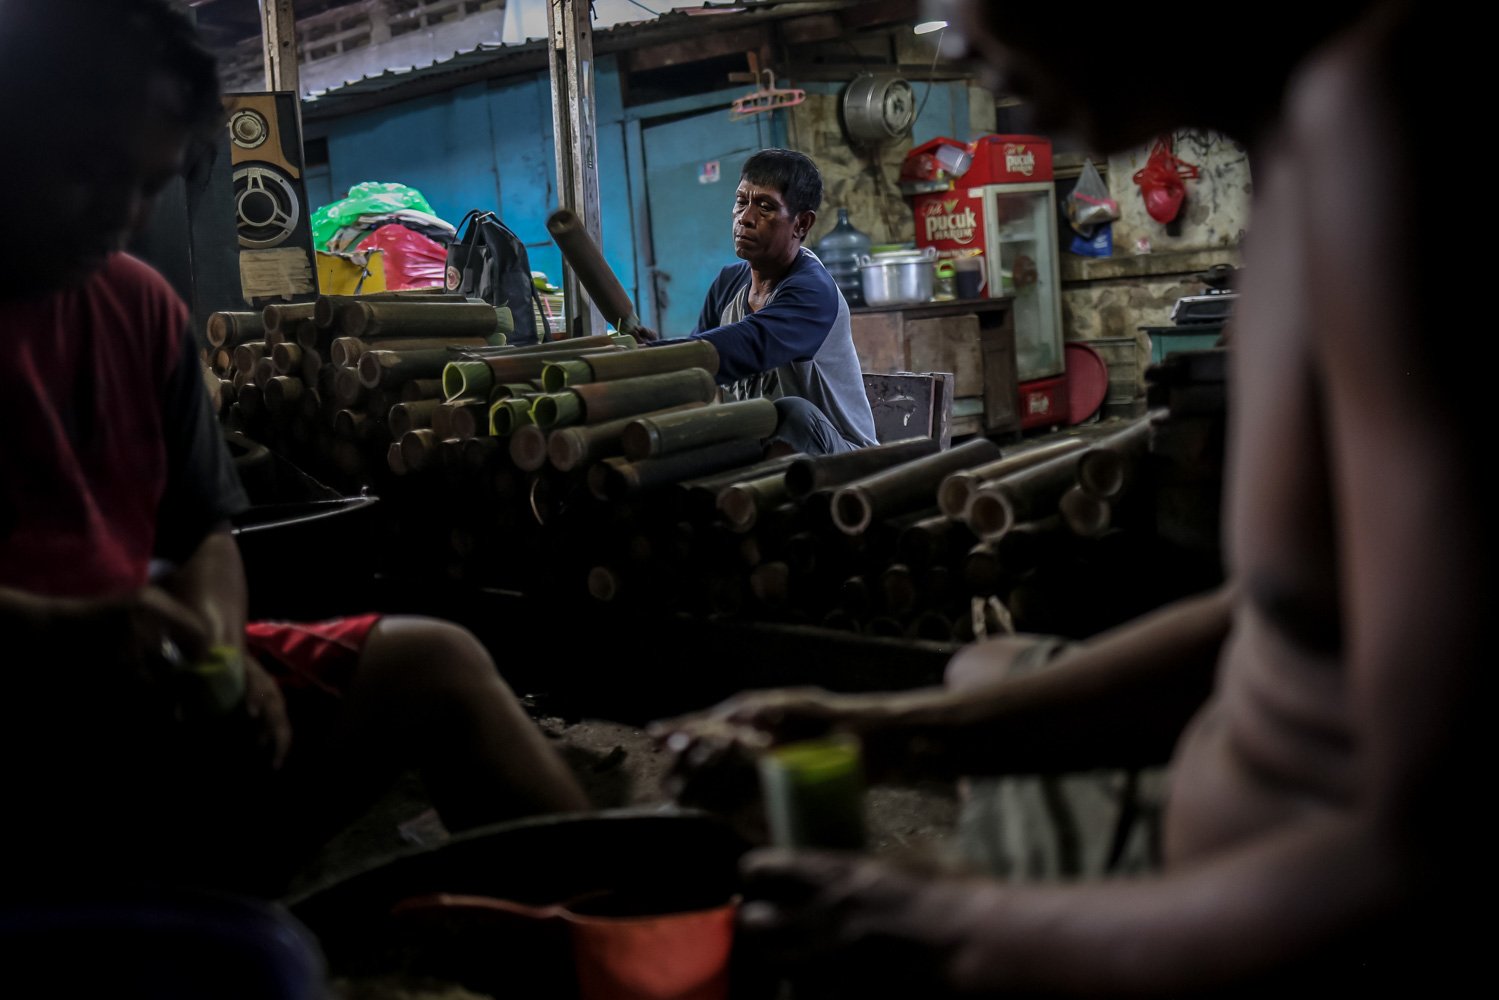 Pekerja menyelesaikan proses pengisian bambu untuk lemang tapai di kawasan Senen, Jakarta, Selasa (28/3). Selama bulan Ramadhan, pelaku usaha lemang tapai meningkatkan produksi hingga 300 buah per hari dengan harga jual sebesar Rp17 ribu per batang.